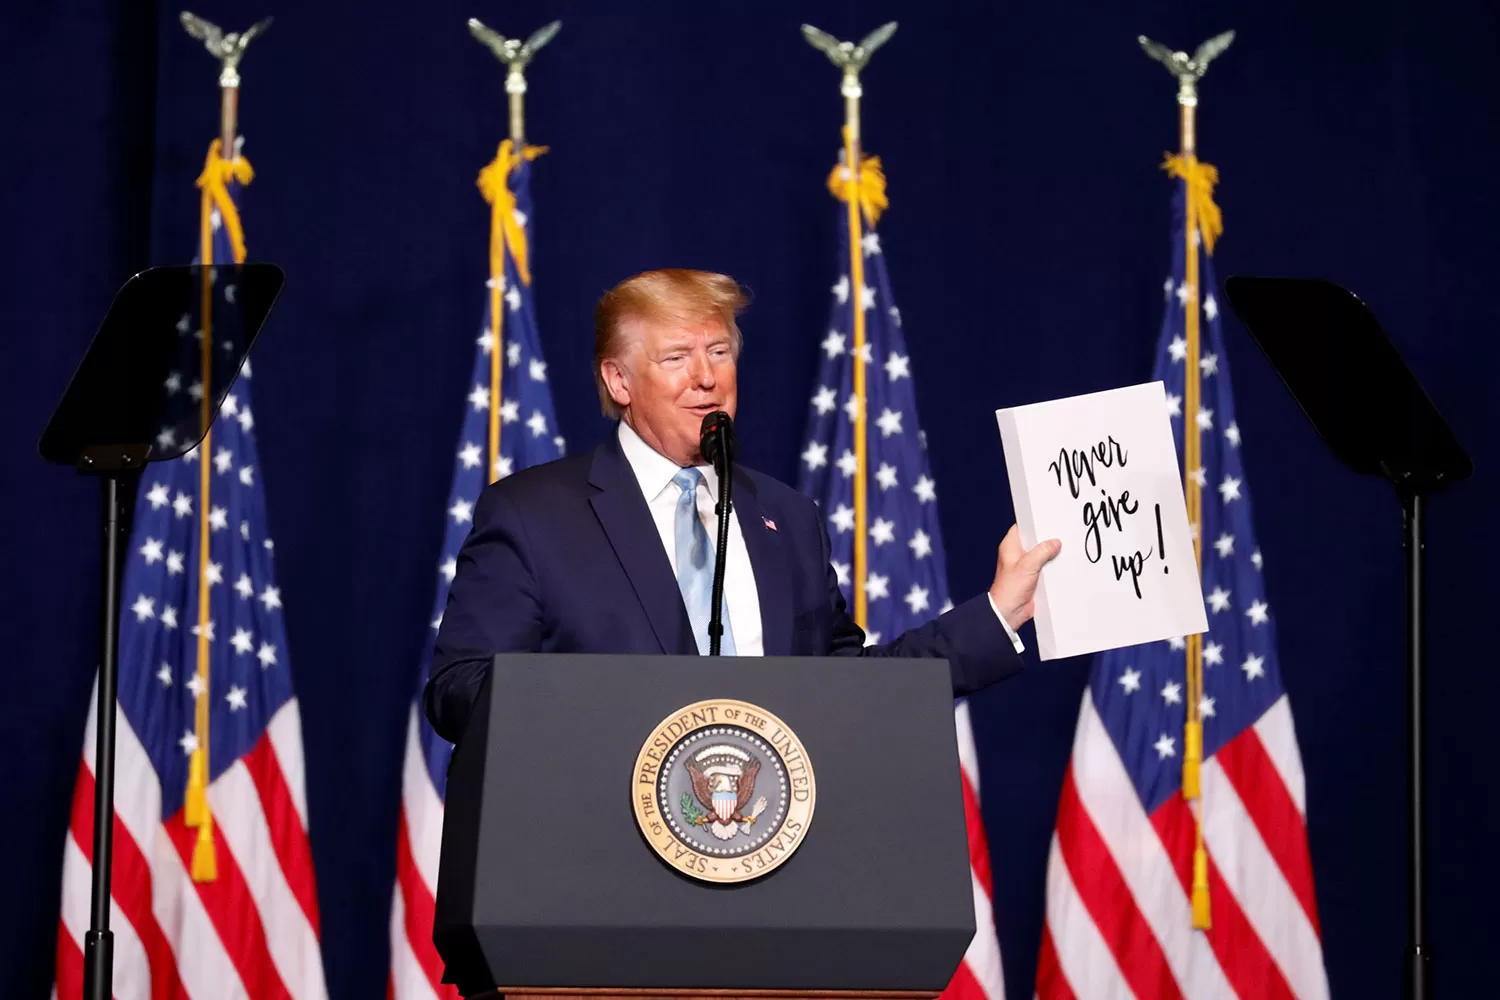 JÁMAS DARSE POR VENCIDO. Eso es lo que dice el cartel que tiene Trump en la mano. REUTERS